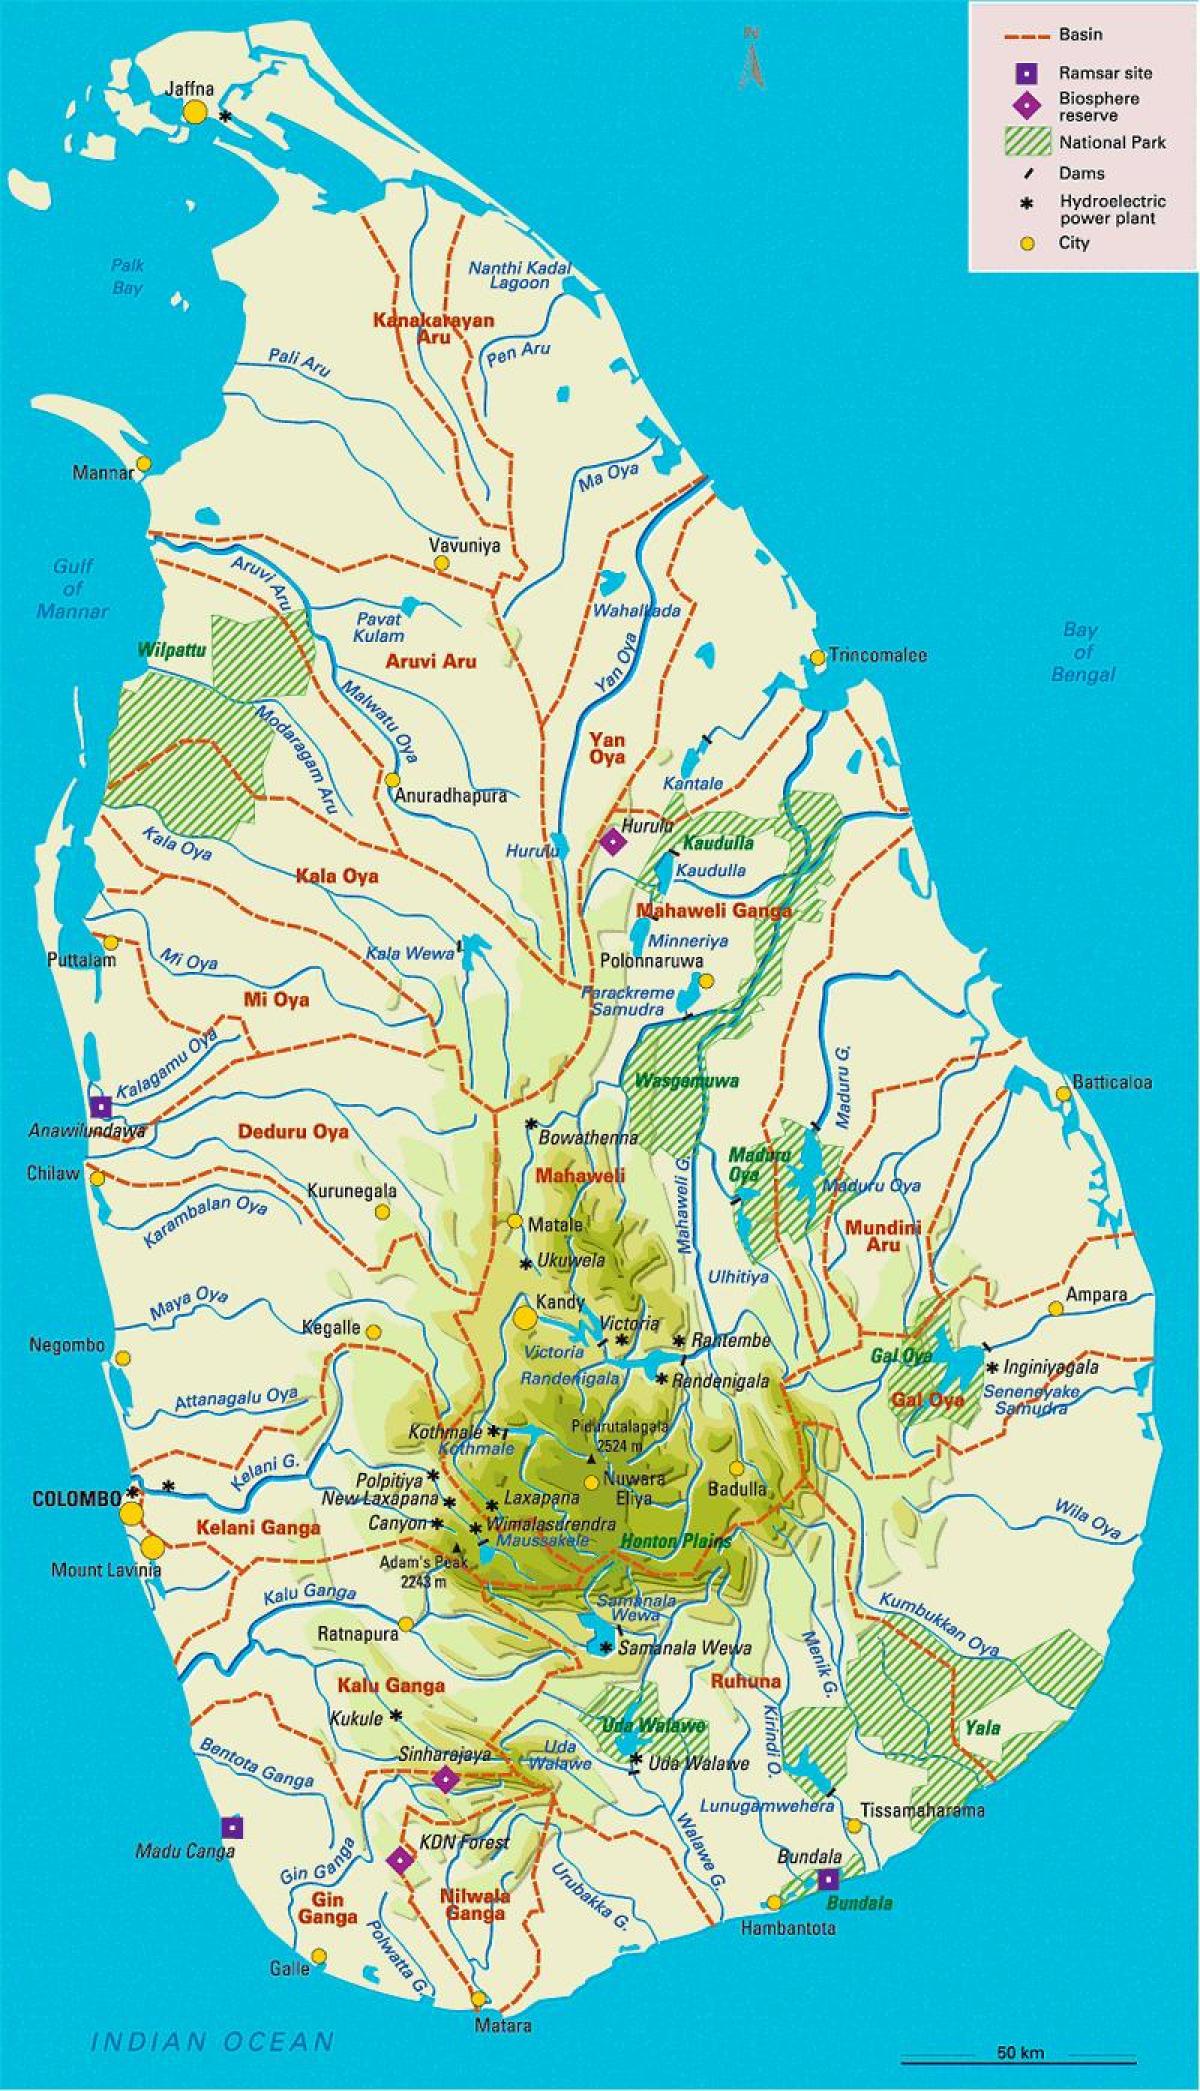 શ્રીલંકાના નદીઓ નકશો તમિલ